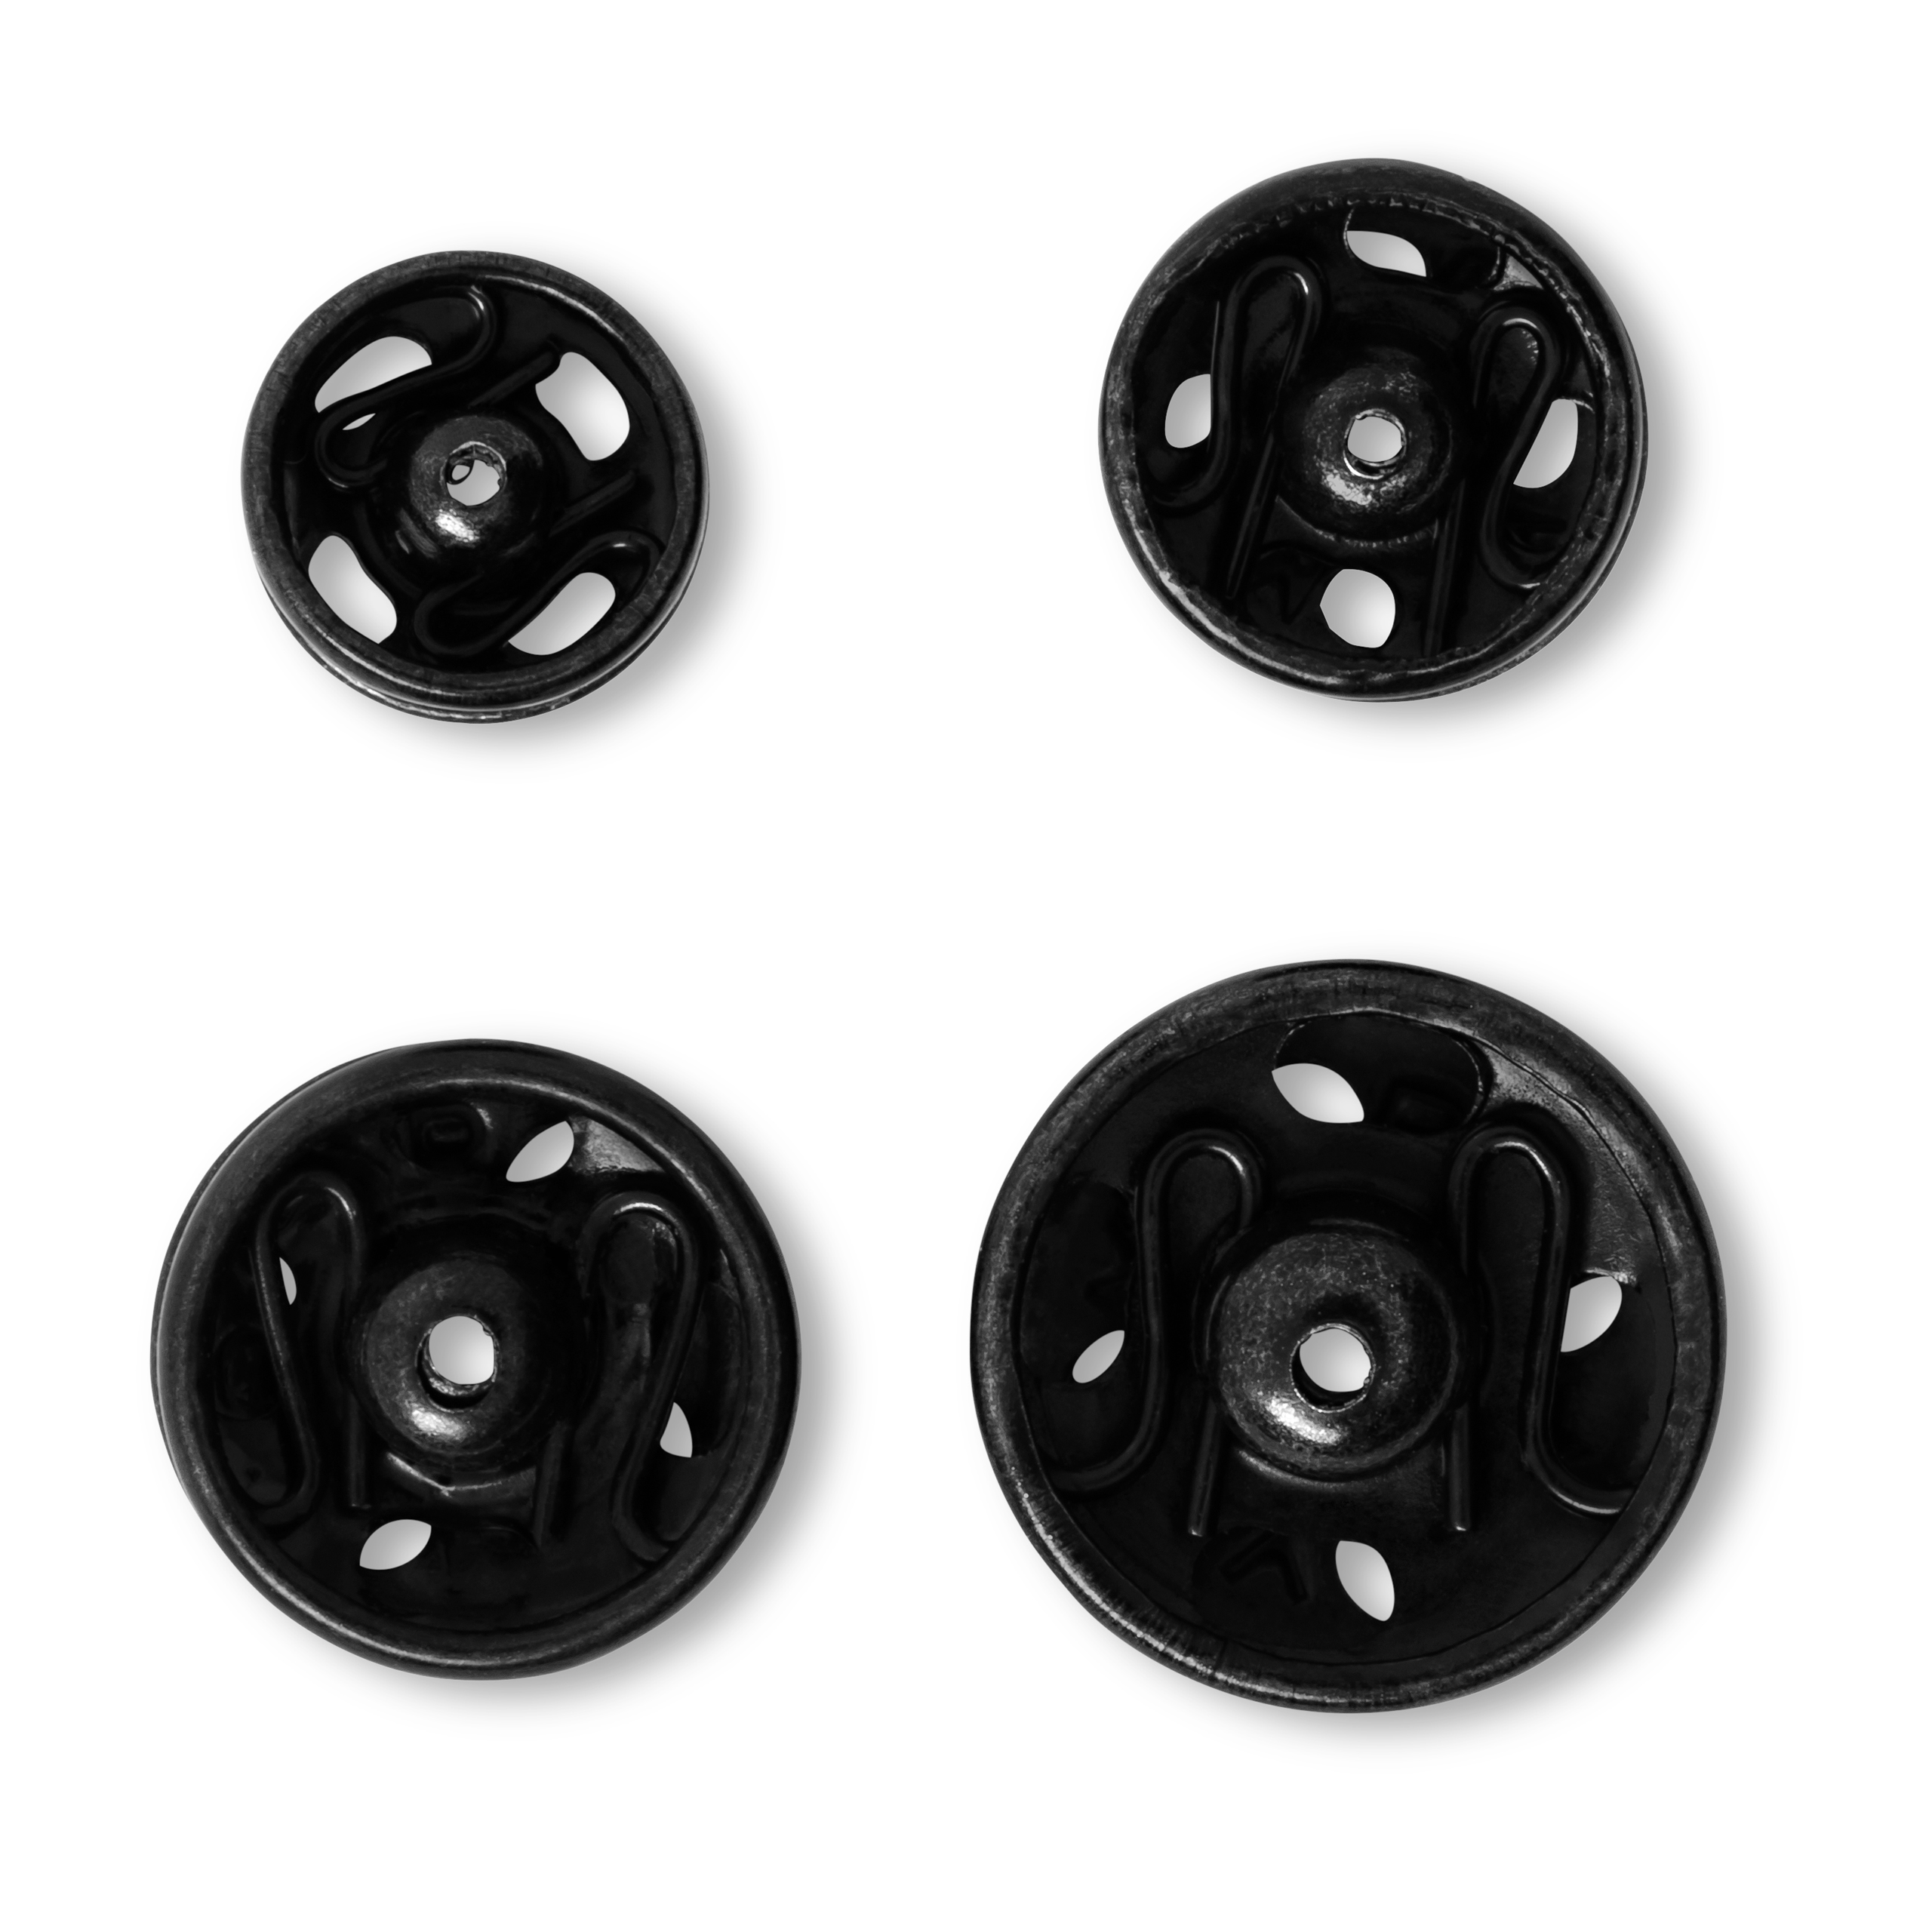 Druckknöpfe, schwarz, 20 Stück, 6-11 mm, Prym - Art. 341271